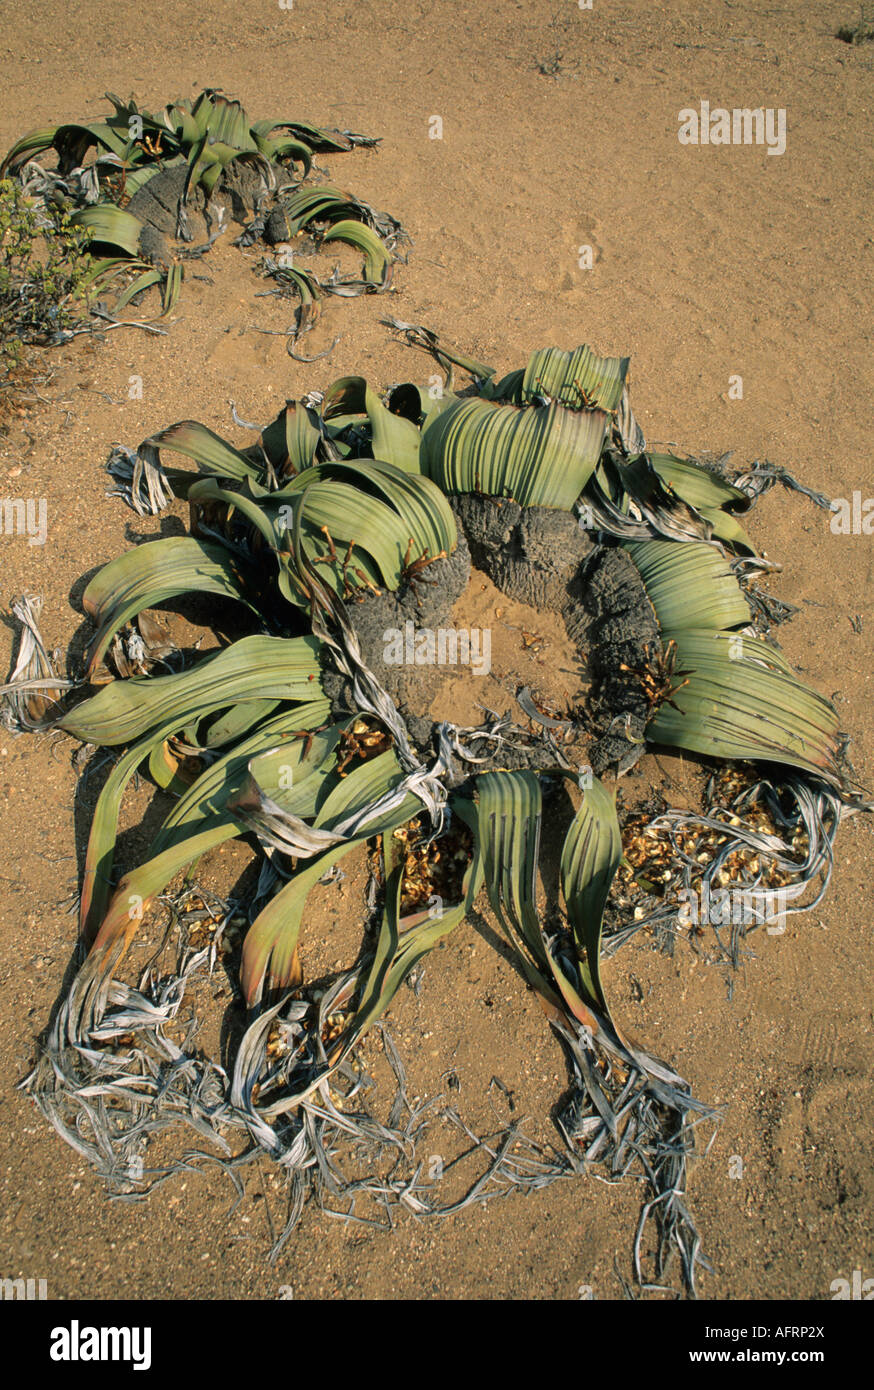 Namibia, Skeleton Coast (Welwitschia mirabilis) Ancient endemic plant Stock Photo